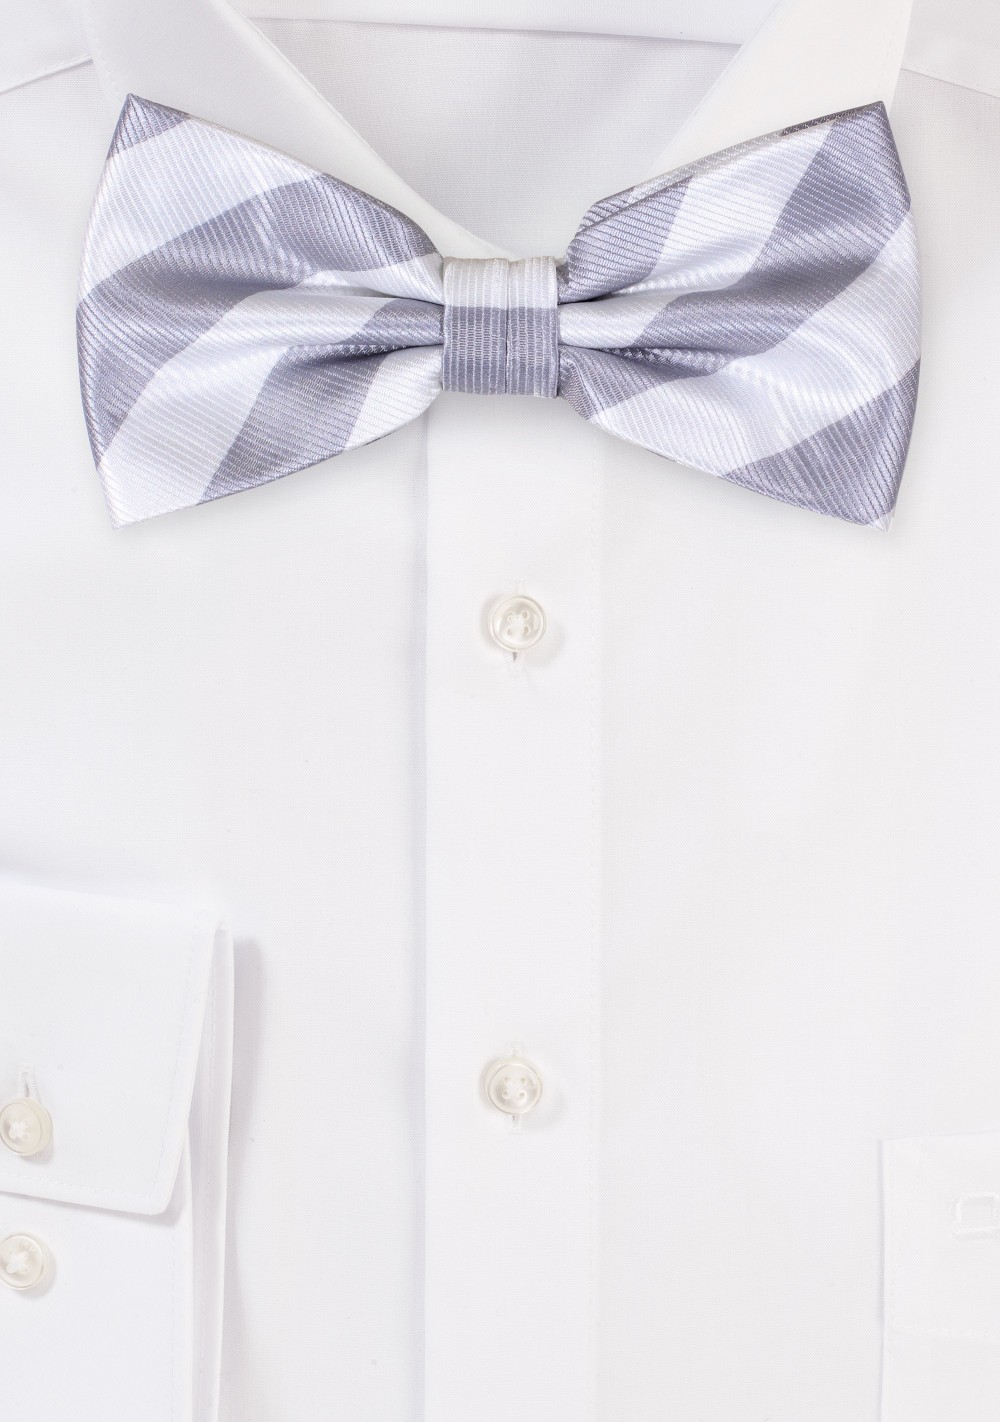 Repp Stripe Bow Tie in Silver and White